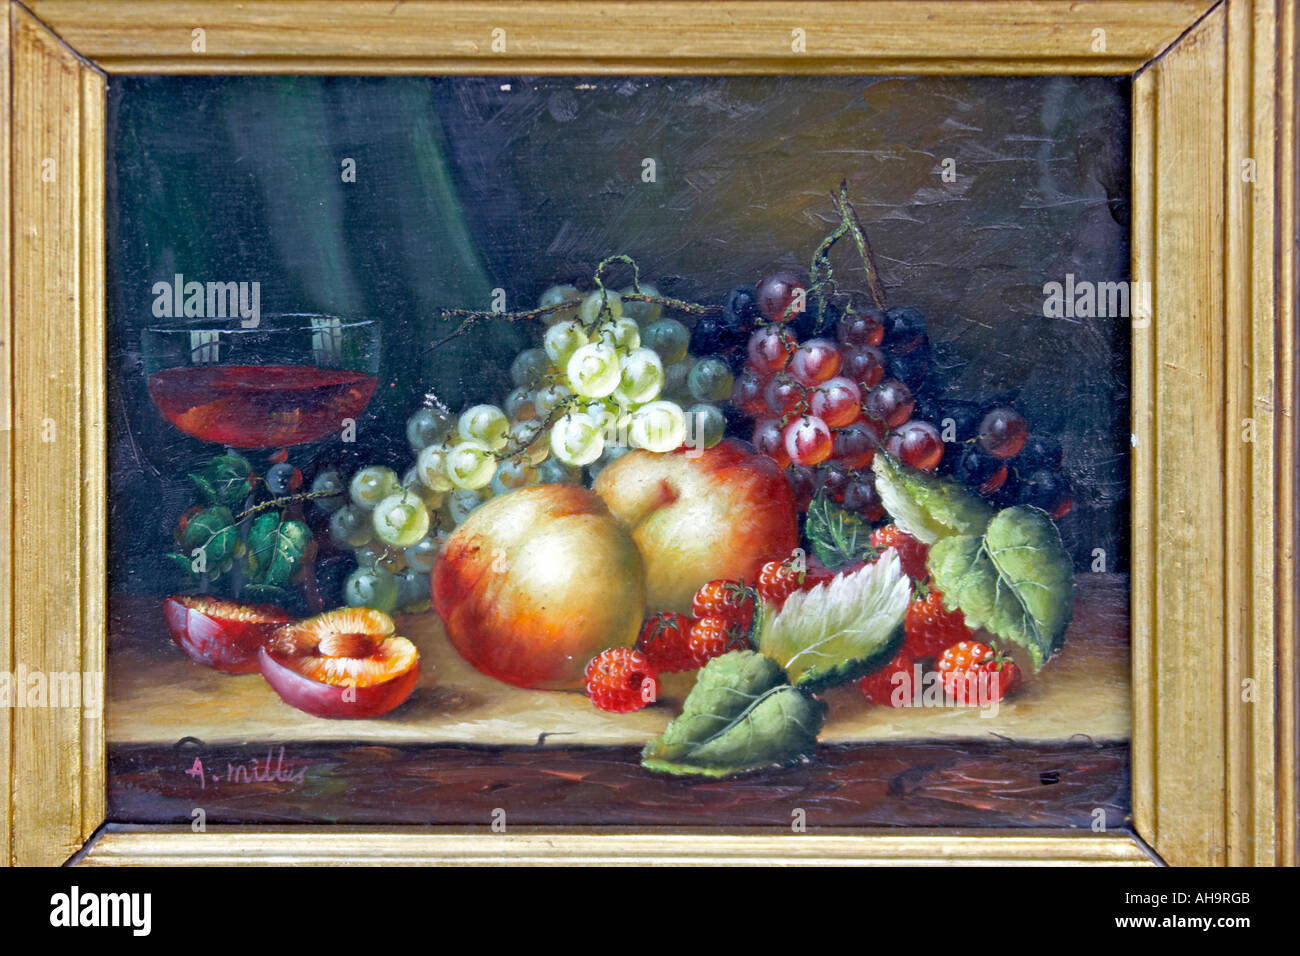 L'huile de style hollandais, peinture alimentaire de fruits avec des raisins feuilles et les pêches Banque D'Images